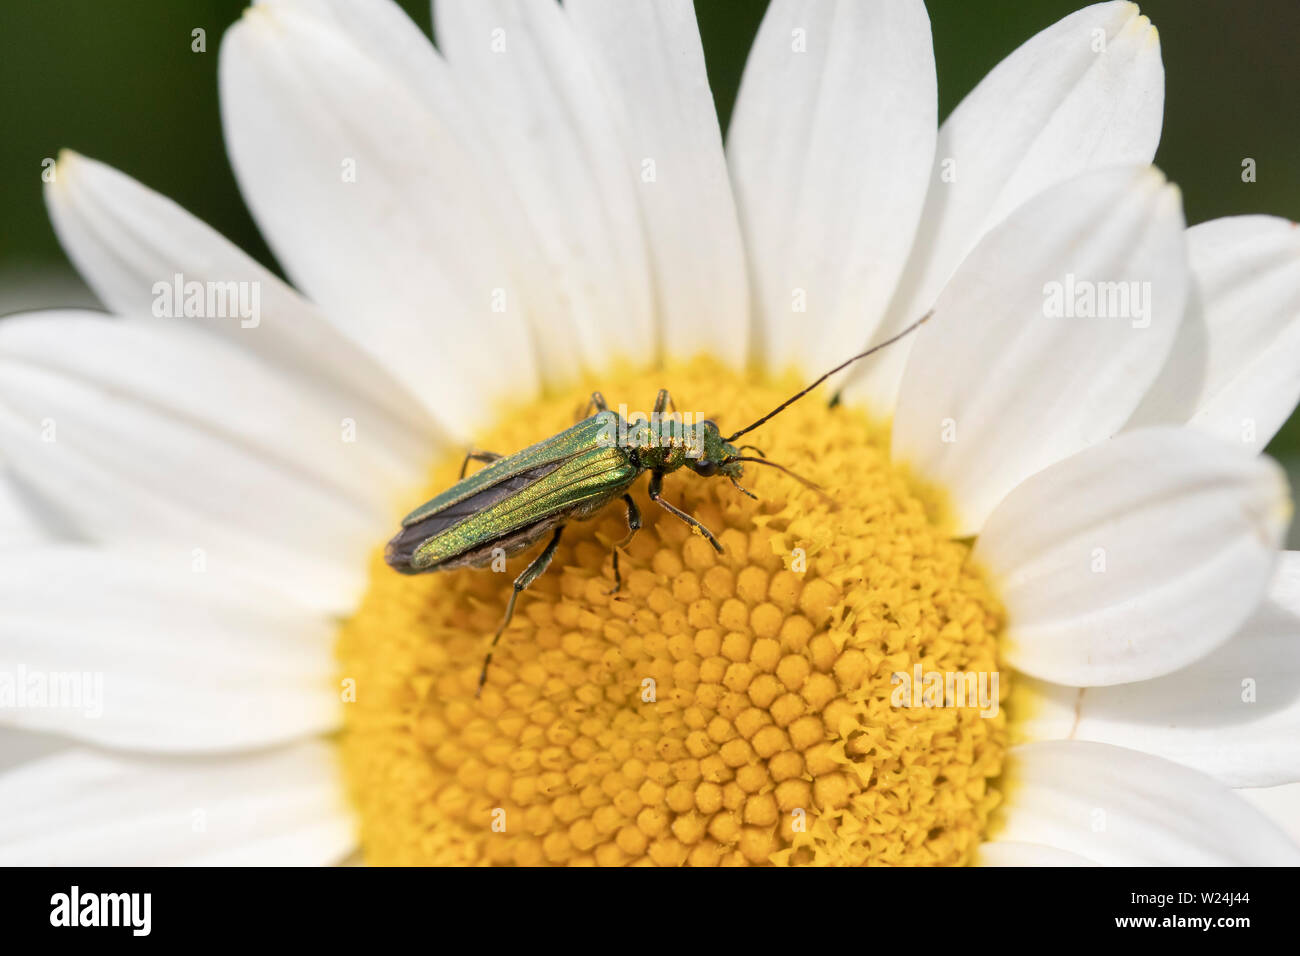 Patas gruesas flor escarabajo (Oedemera nobilis), también conocida como la hinchada-thighed escarabajo y el falso escarabajo, aceite de Anthemis tinctoria "E.C.Buxton' Foto de stock